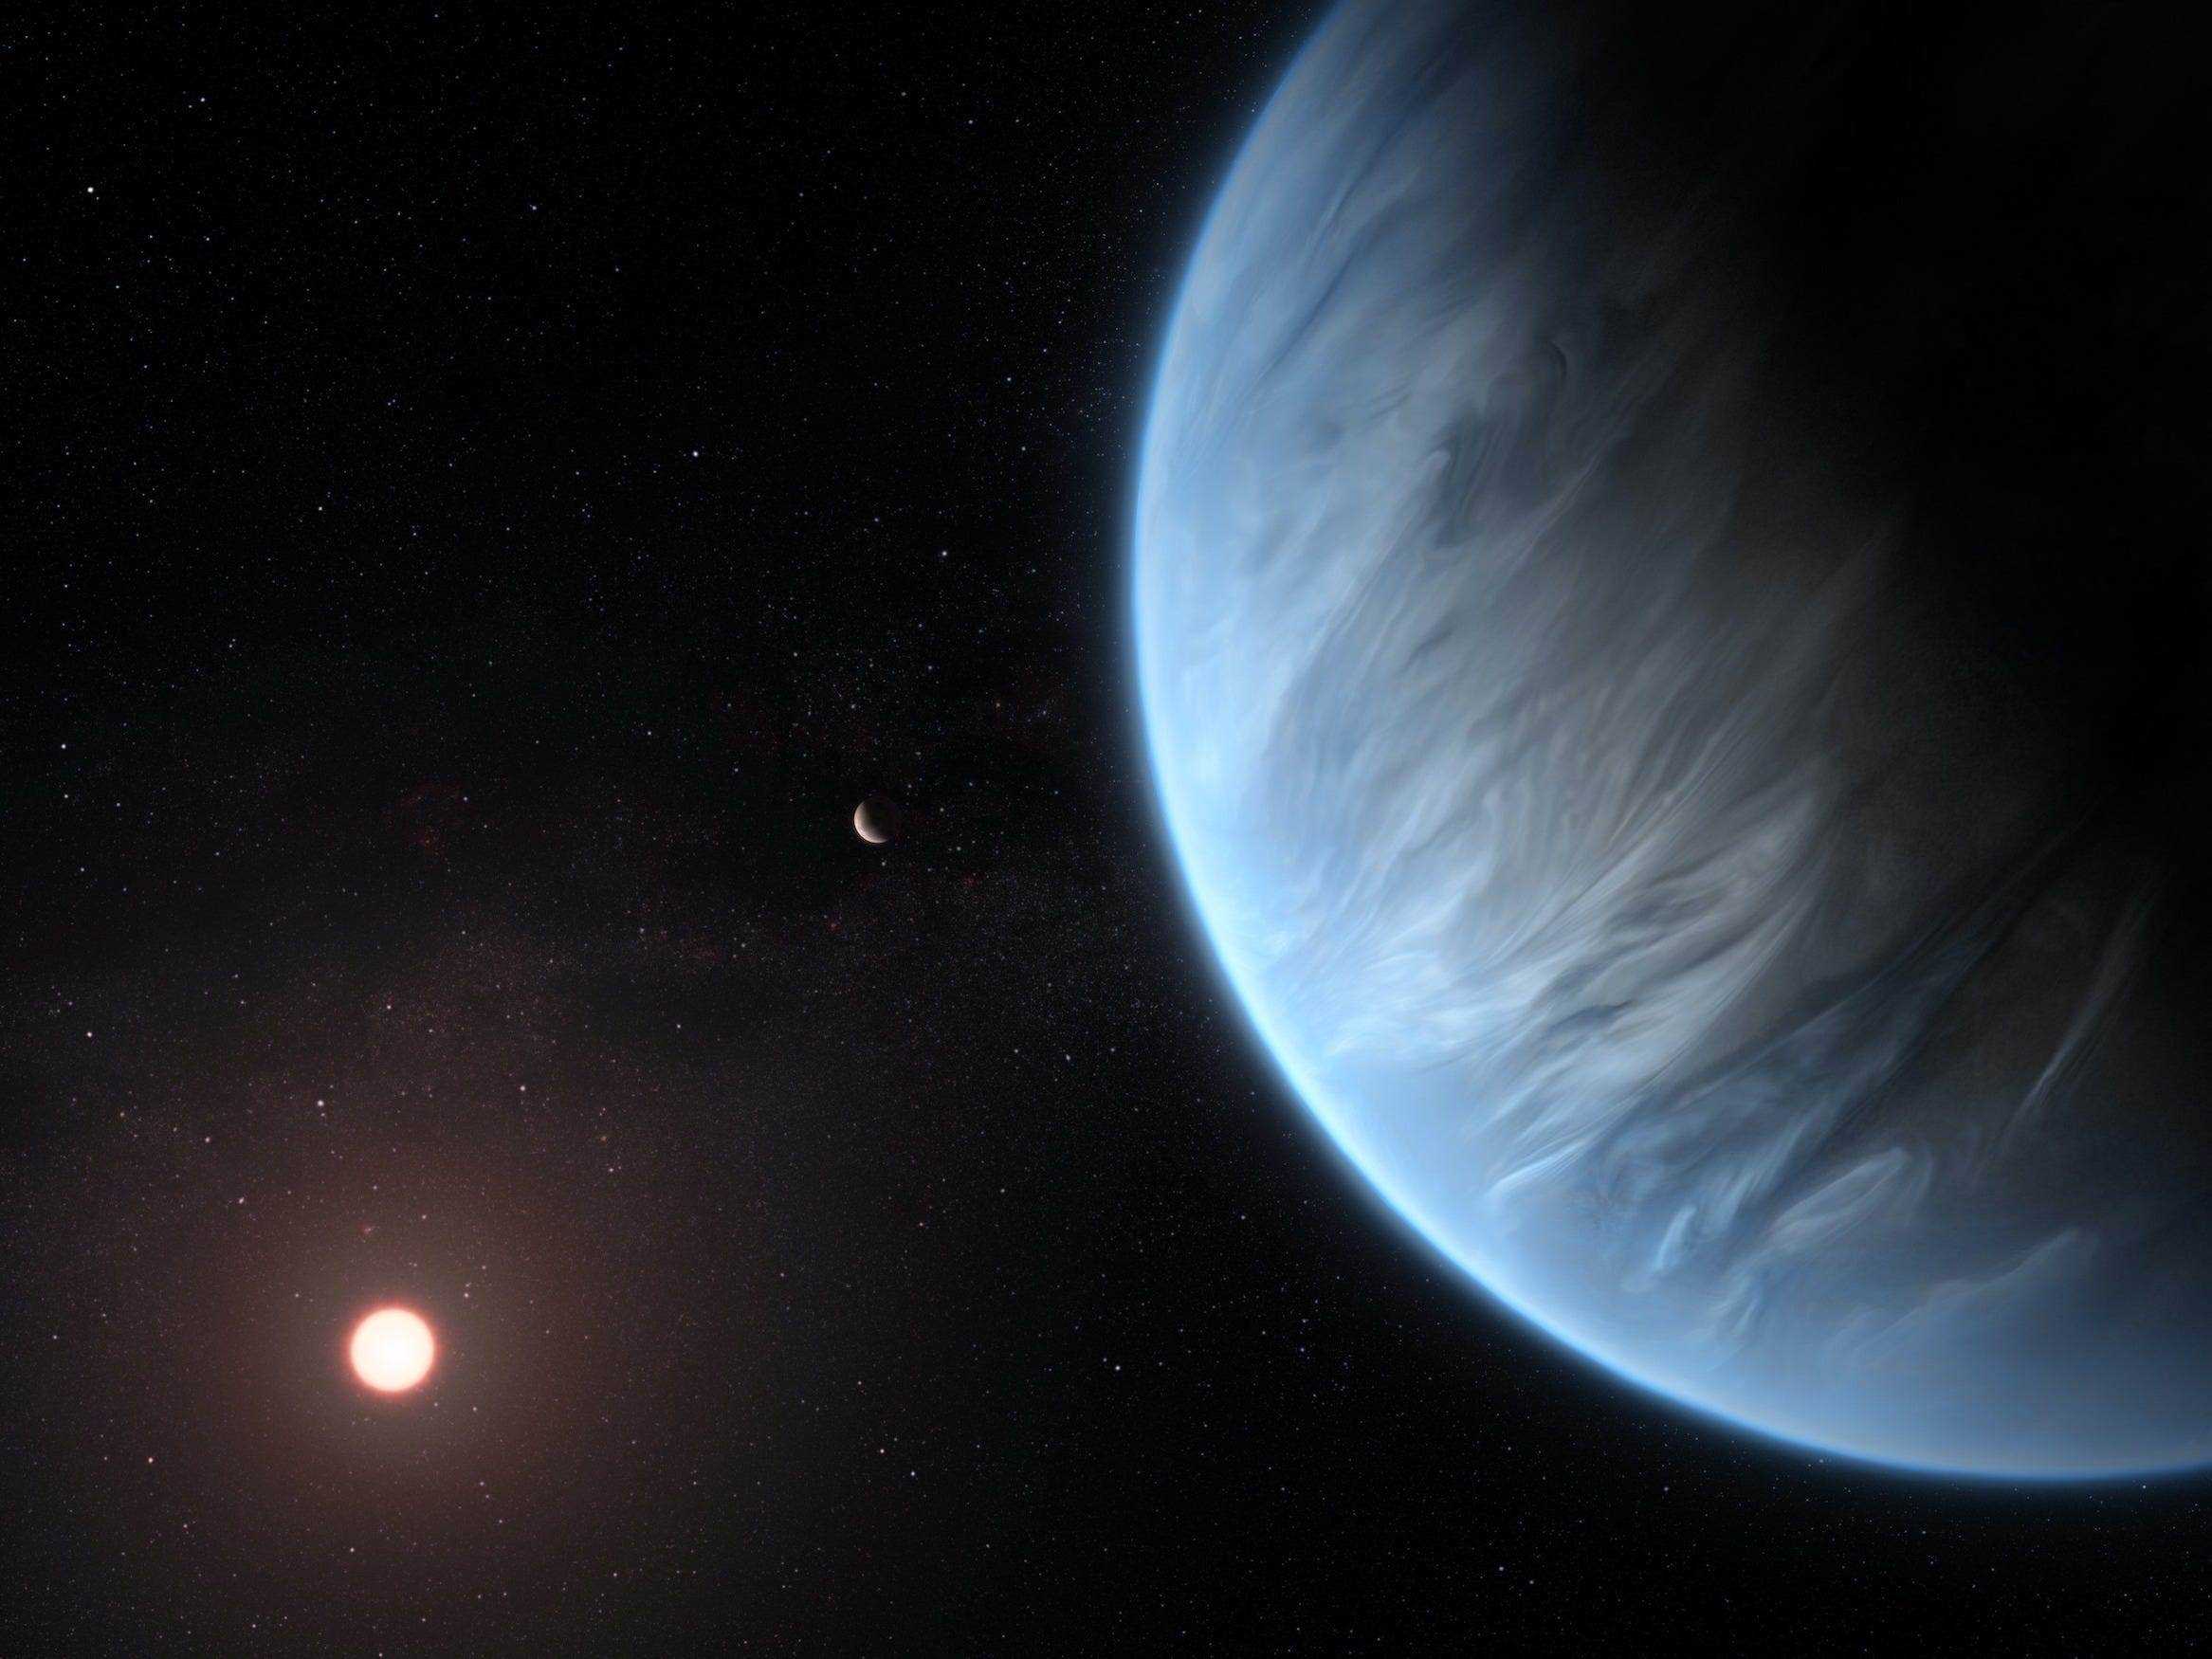 Eine künstlerische Darstellung zeigt den Planeten K2-18b, seinen Mutterstern und einen Begleitplaneten in diesem System.  K2-18b ist jetzt der einzige Supererd-Exoplanet, von dem bekannt ist, dass er sowohl Wasser als auch Temperaturen beherbergt, die Leben unterstützen könnten.  UCL-Forscher verwendeten Archivdaten aus den Jahren 2016 und 2017, die vom NASA/ESA-Weltraumteleskop Hubble aufgenommen wurden, und entwickelten Open-Source-Algorithmen, um das durch die Atmosphäre von K2-18b gefilterte Sternenlicht zu analysieren.  Die Ergebnisse zeigten die molekulare Signatur von Wasserdampf, die auch auf das Vorhandensein von Wasserstoff und Helium in der Atmosphäre des Planeten hinweist.